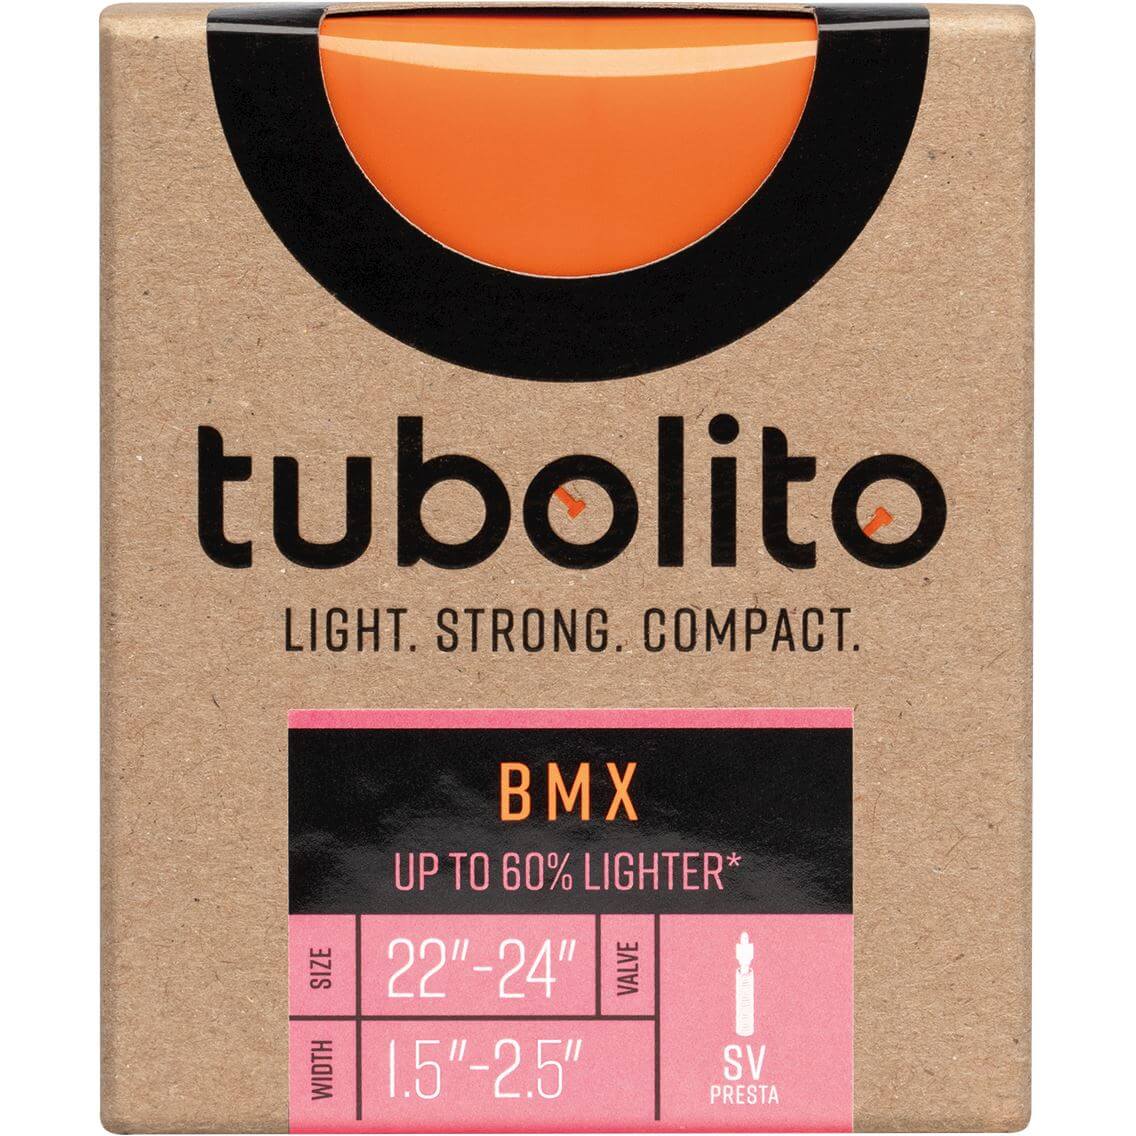 Tubolito Bnb Tubo 22/24 x 1.5 -2.5 fv 42mm